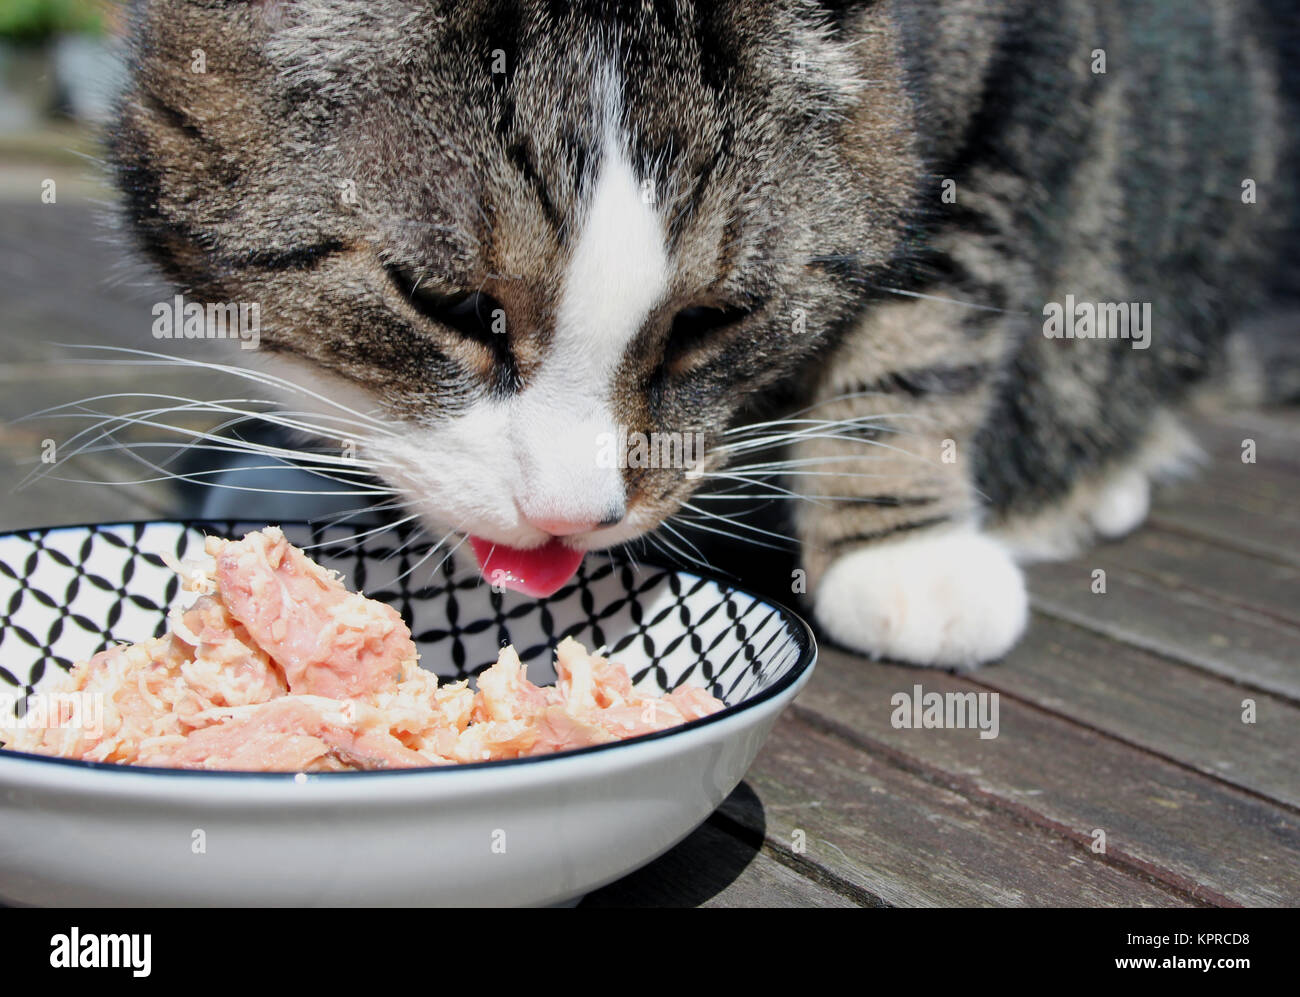 Katzenfutter, Katze, frisch, frisch, Thunfisch, Huhn, Hühnerfleisch,  frisches Essen, nasses Essen Stockfotografie - Alamy